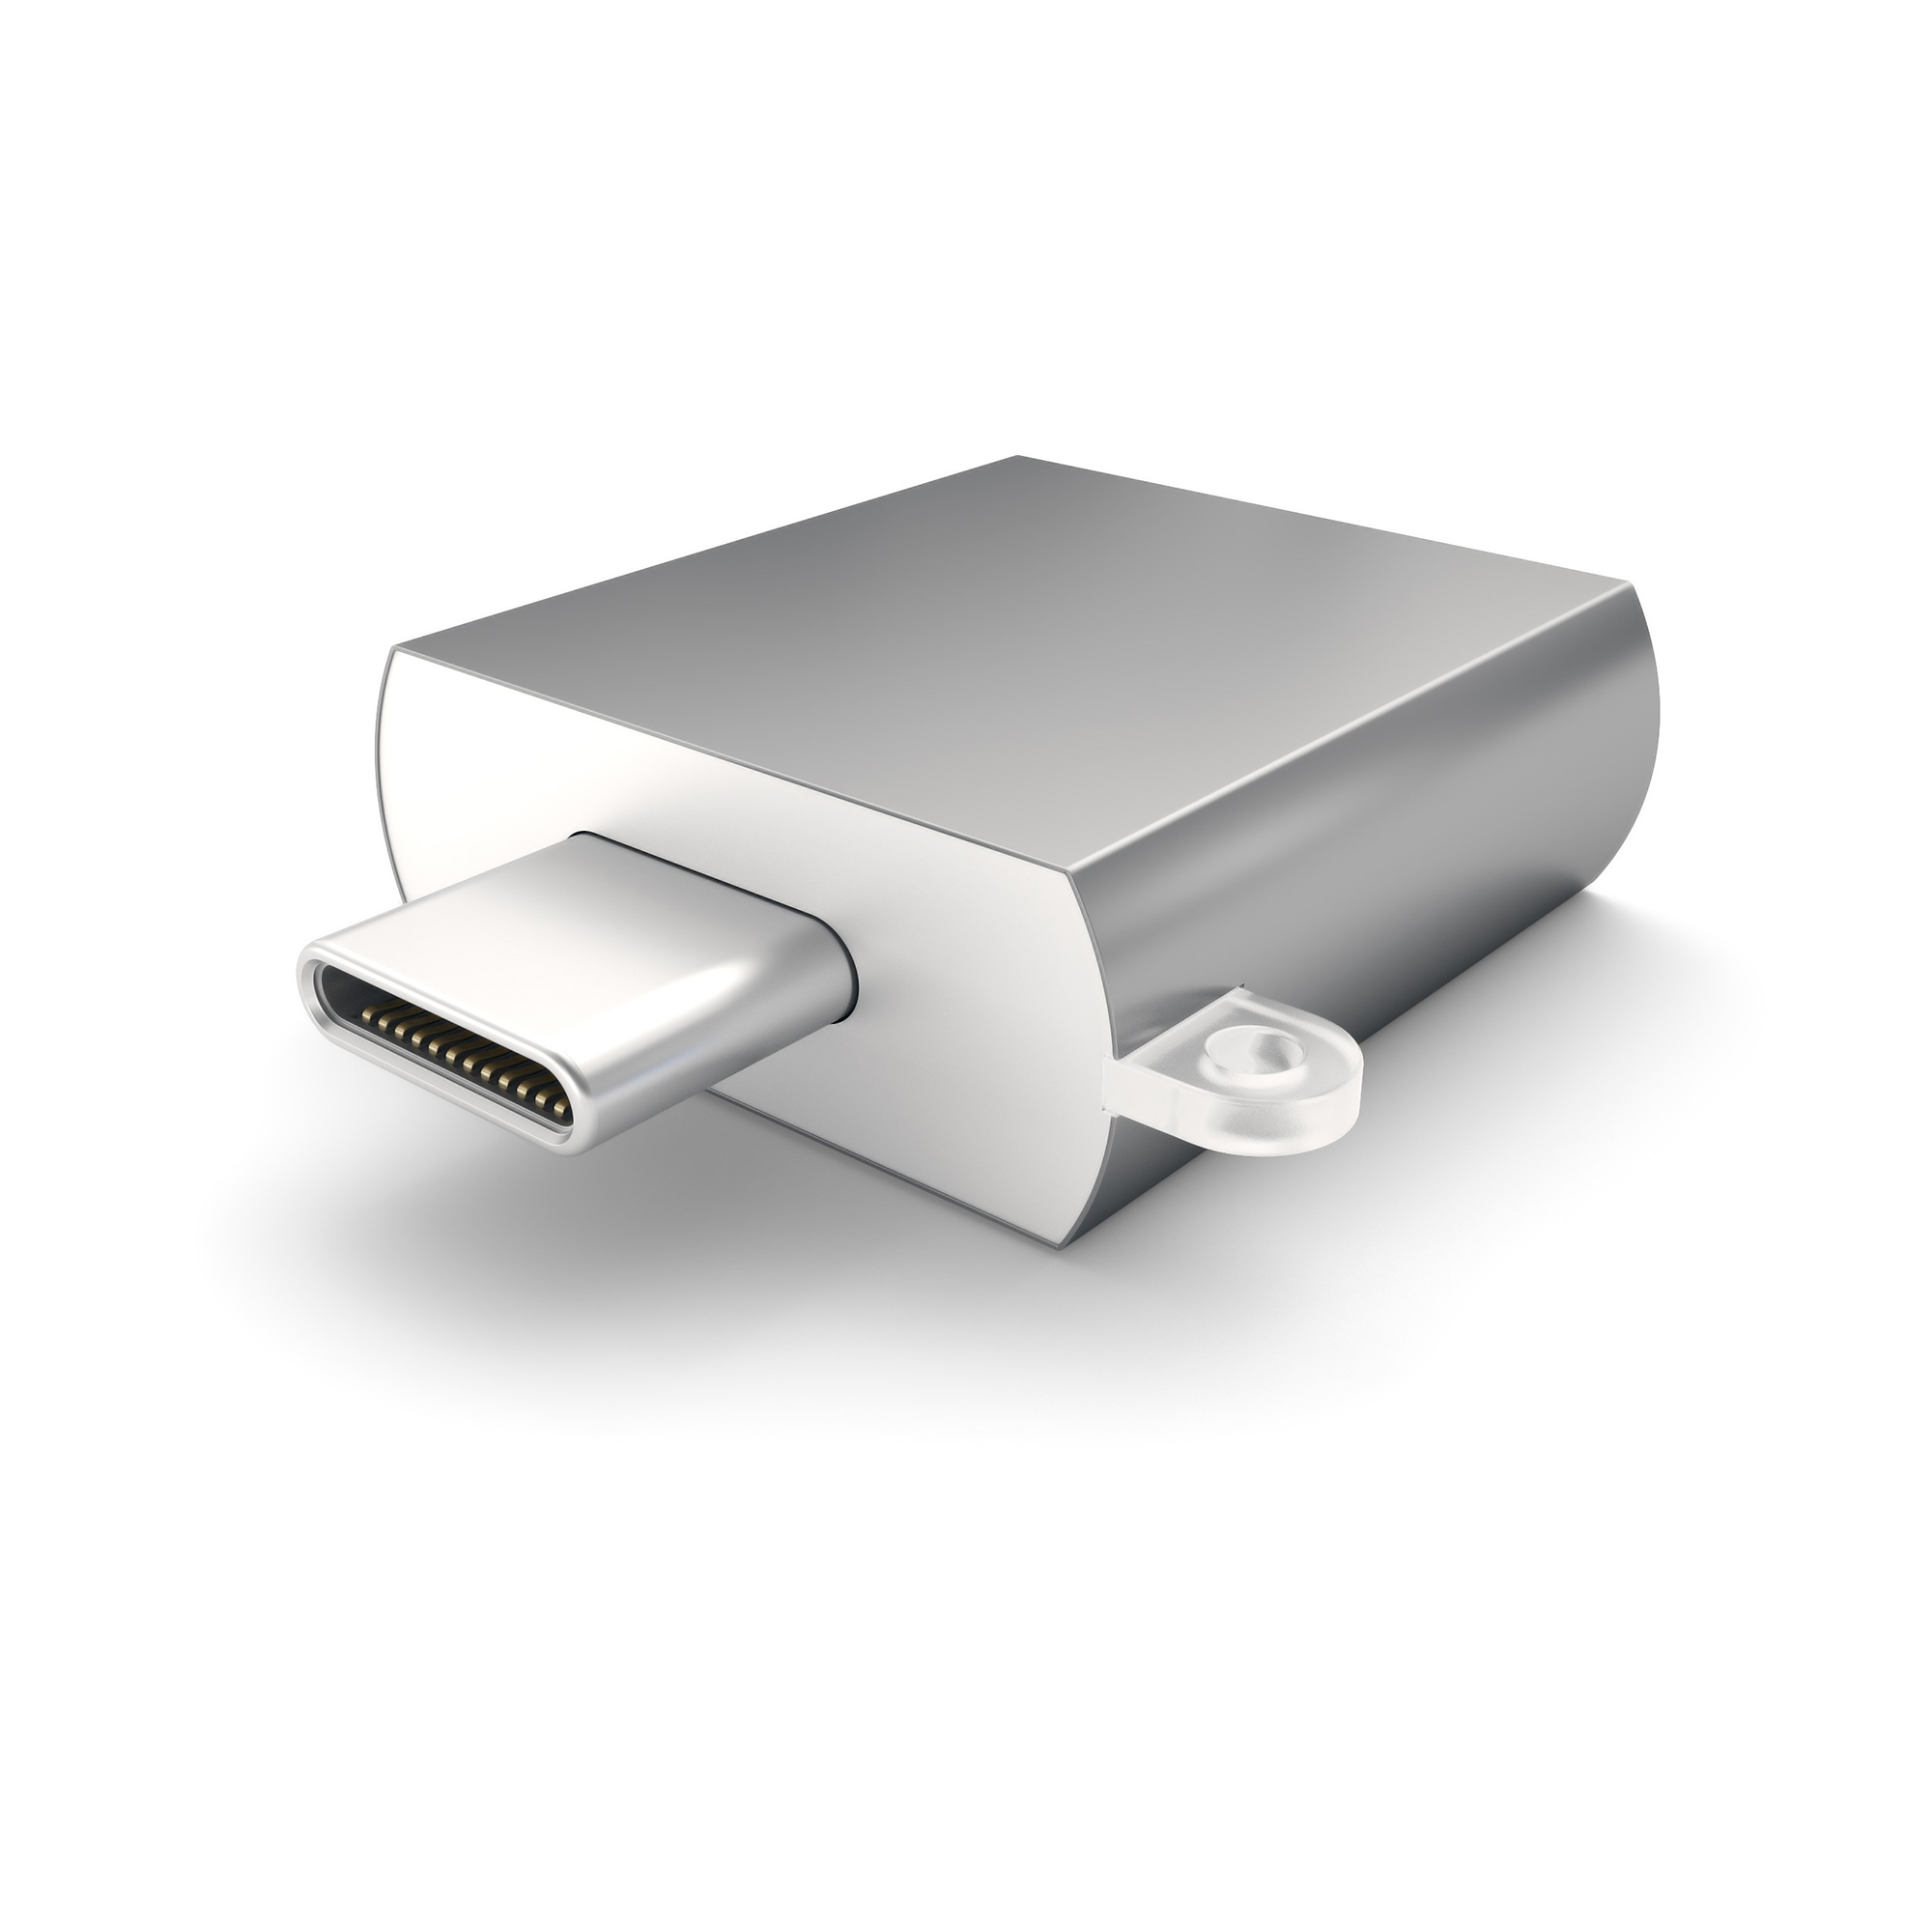 Адаптер Satechi USB 3.0 Type-C to USB 3.0 Type-A Space Gray ST-TCUAM usb хаб satechi aluminum type c mobile pro hub серый космос st tcmphm